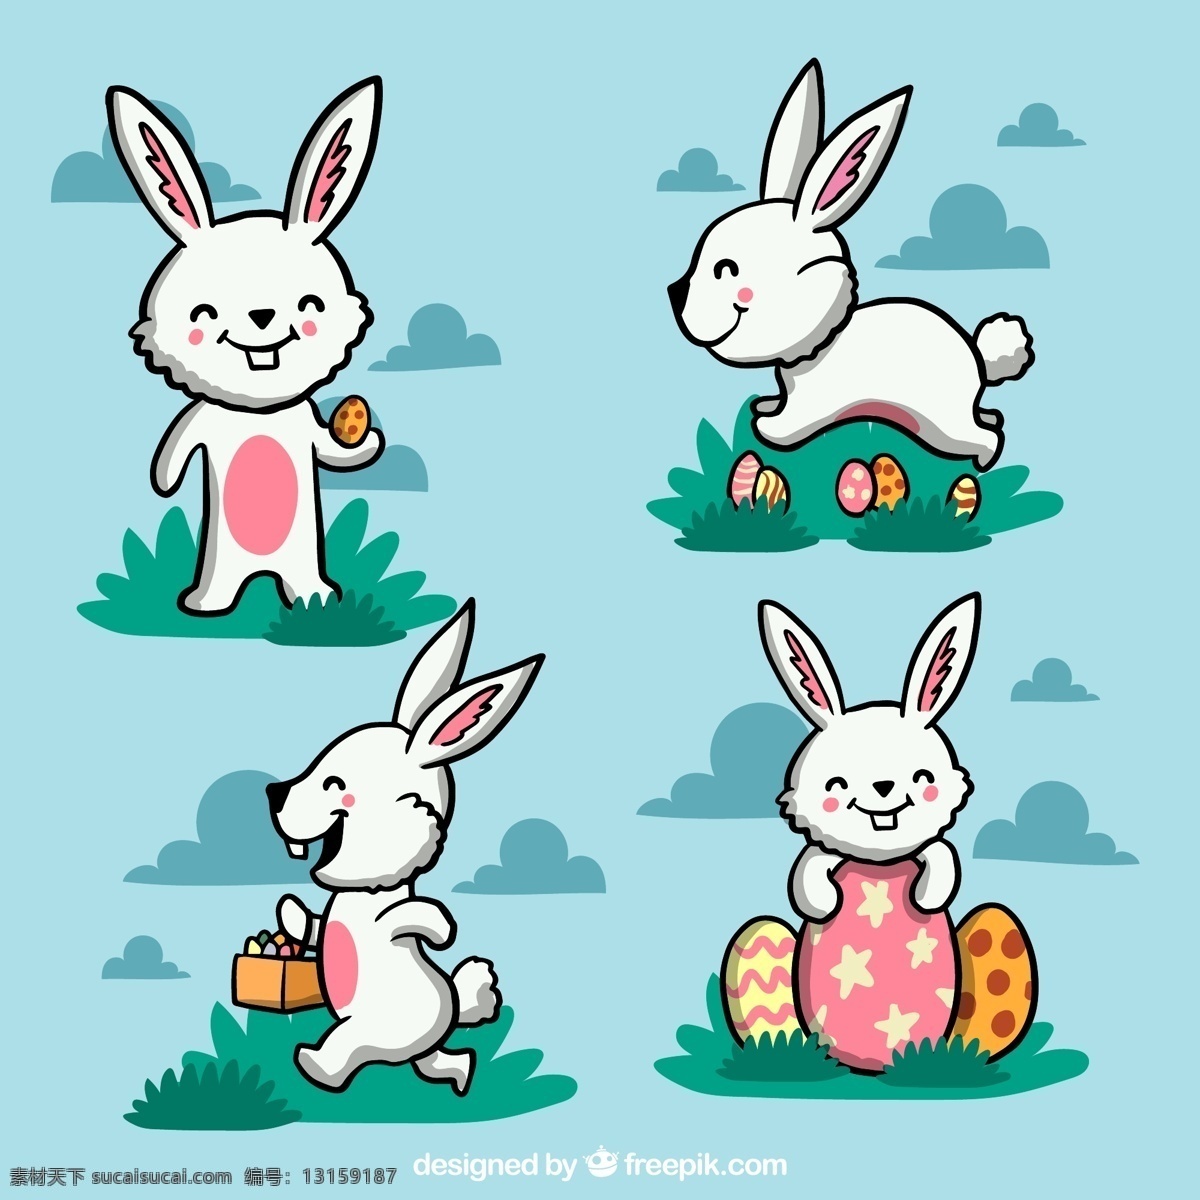 款 可爱 小 白兔 矢量 草地 云朵 复活节 菜单 兔子 动漫动画 动漫人物